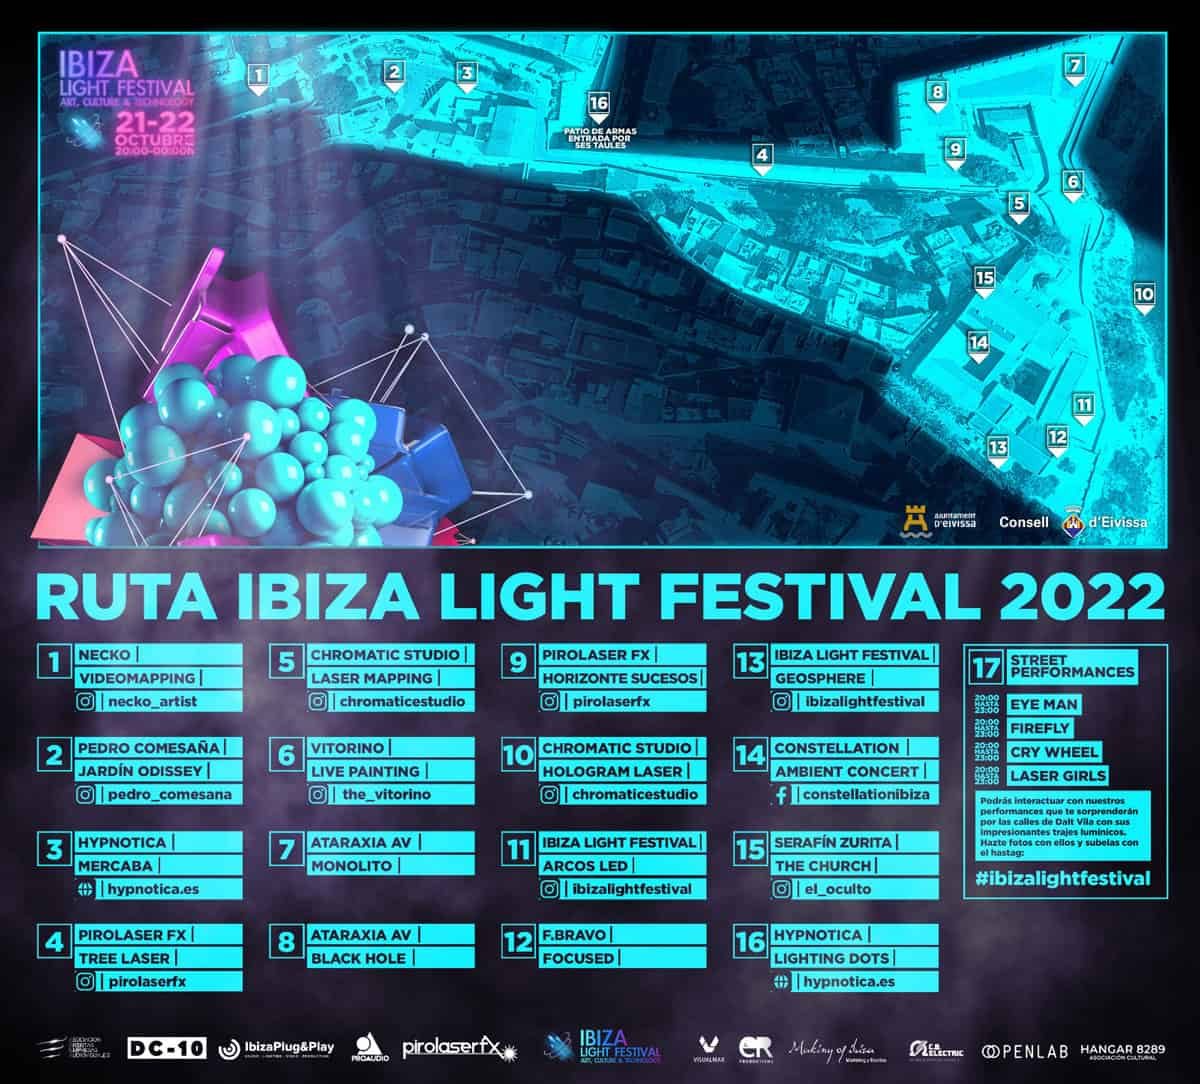 Eivissa-light-festival-2022-welcometoibiza